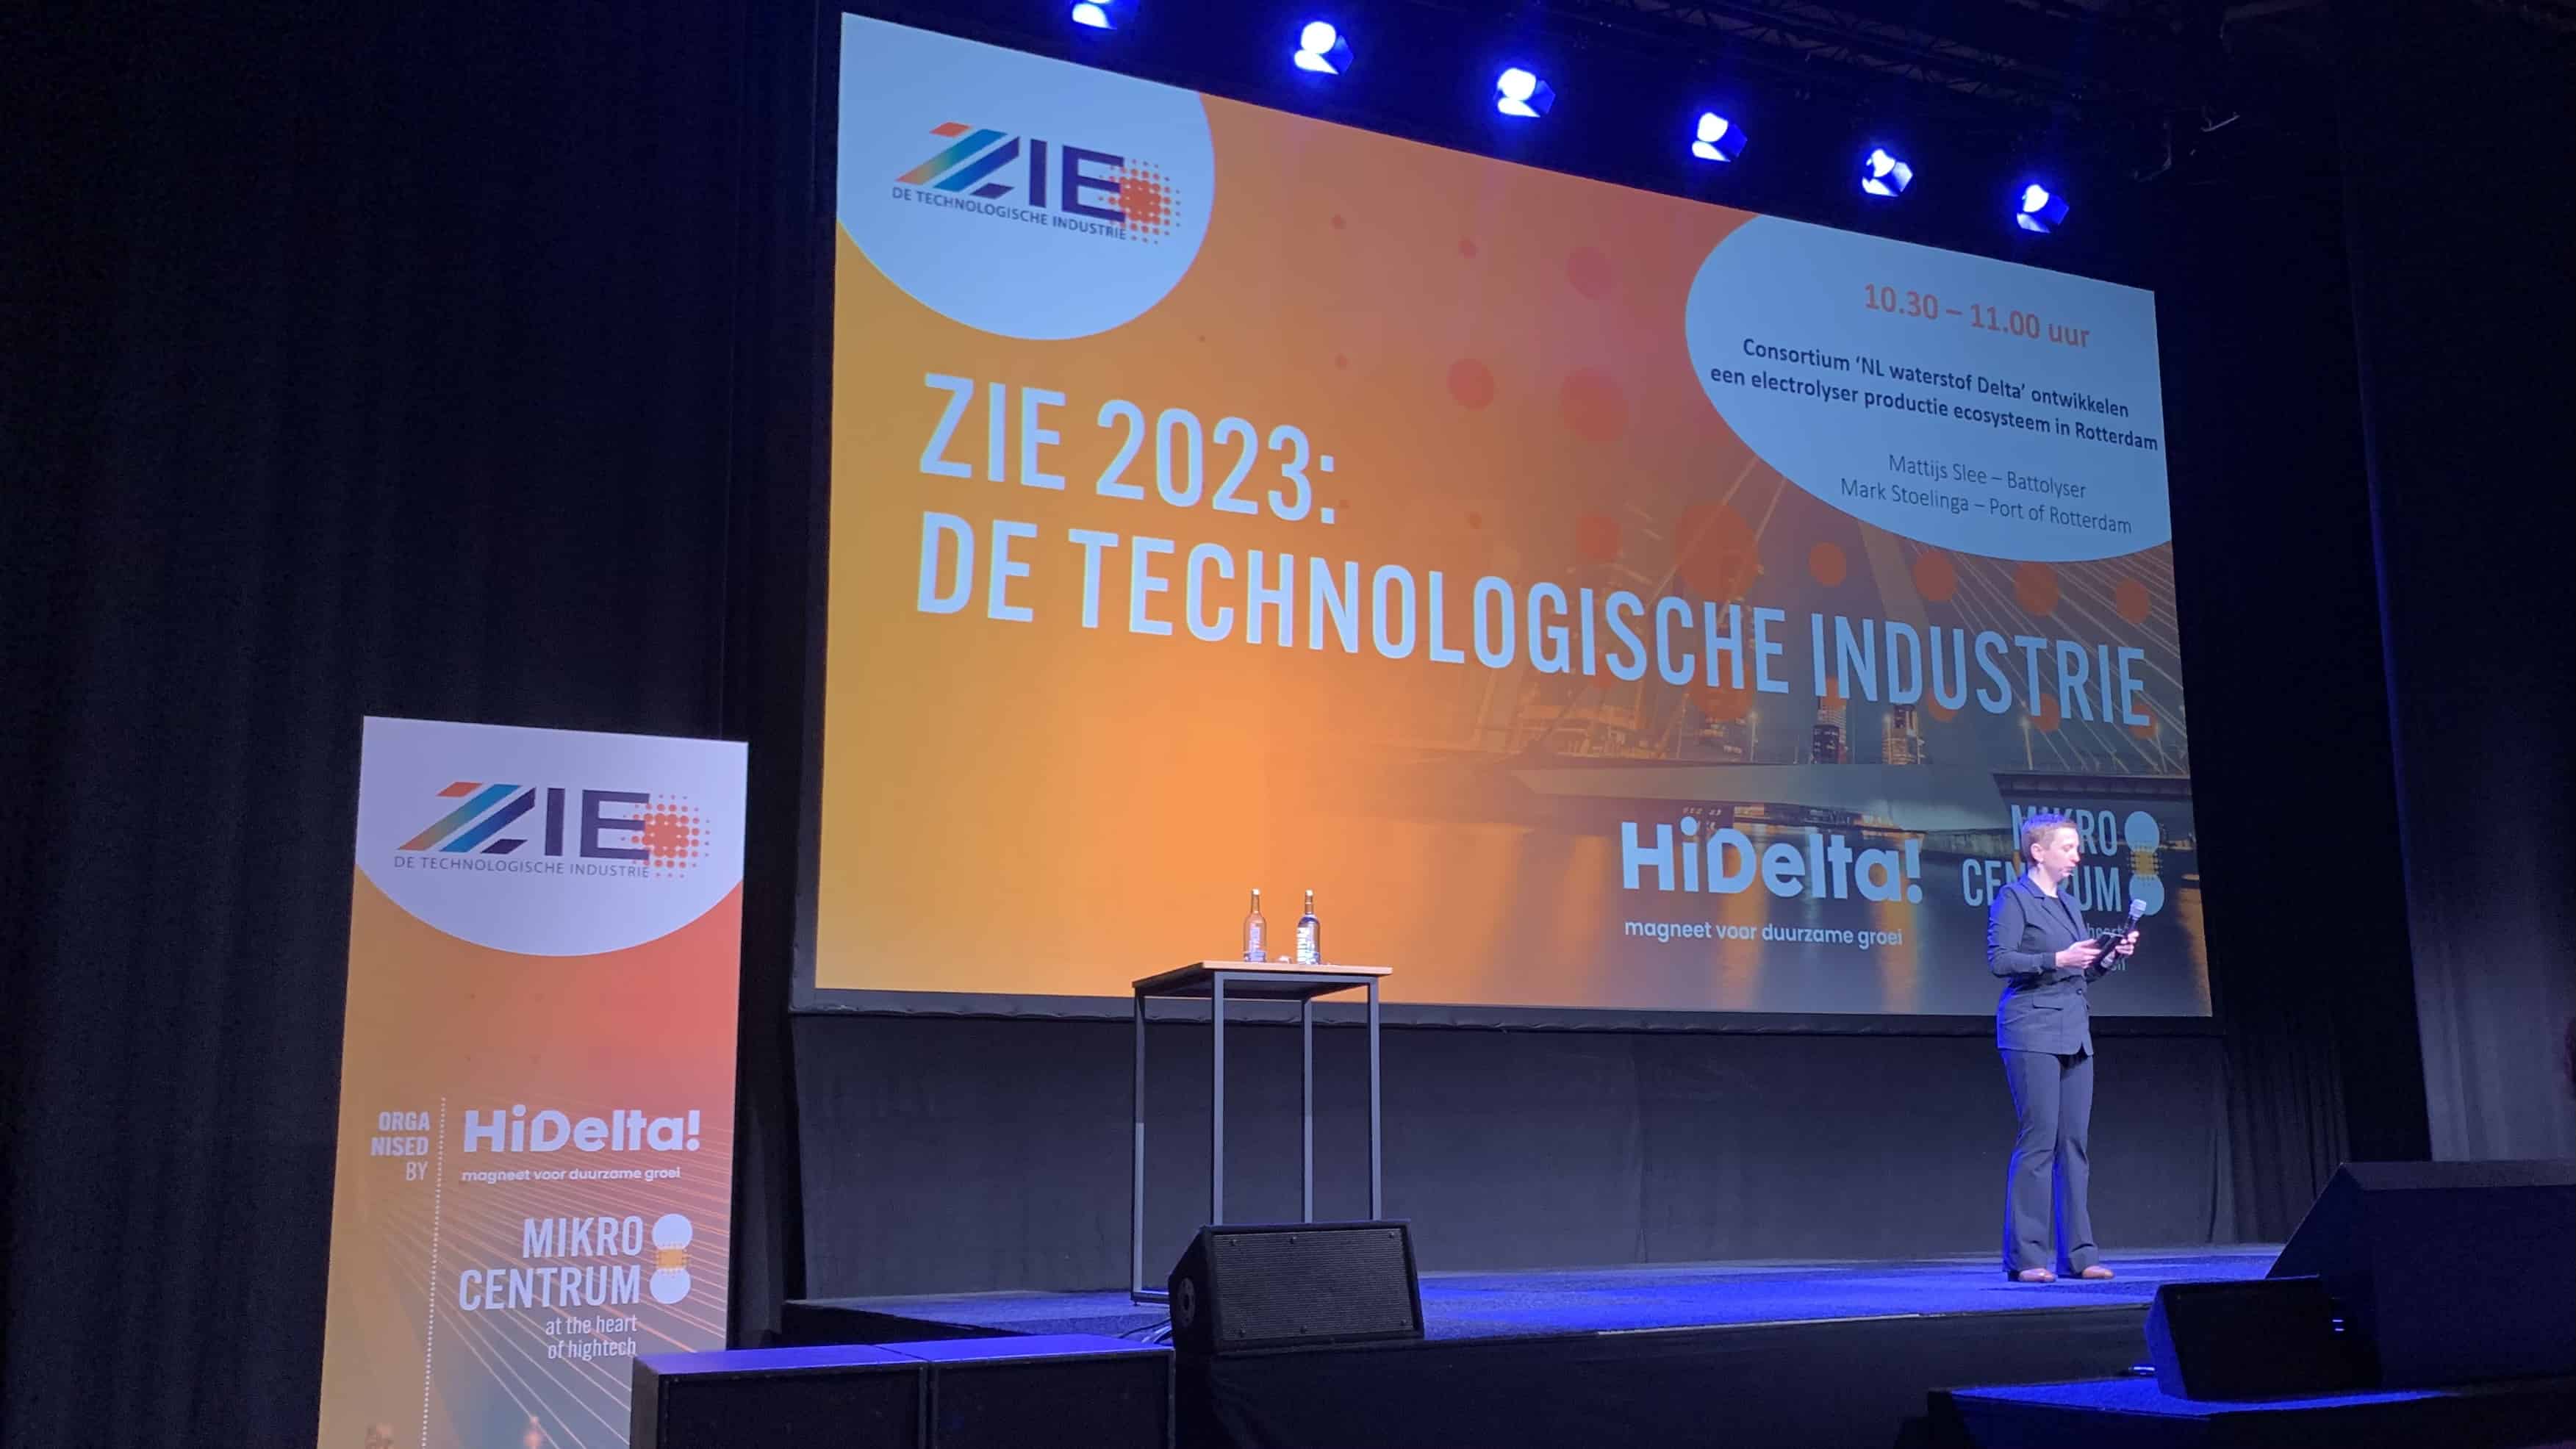 ZIE 2023 richt zich op het delen van kennis om  grote uitdagingen van de hightech aan te pakken